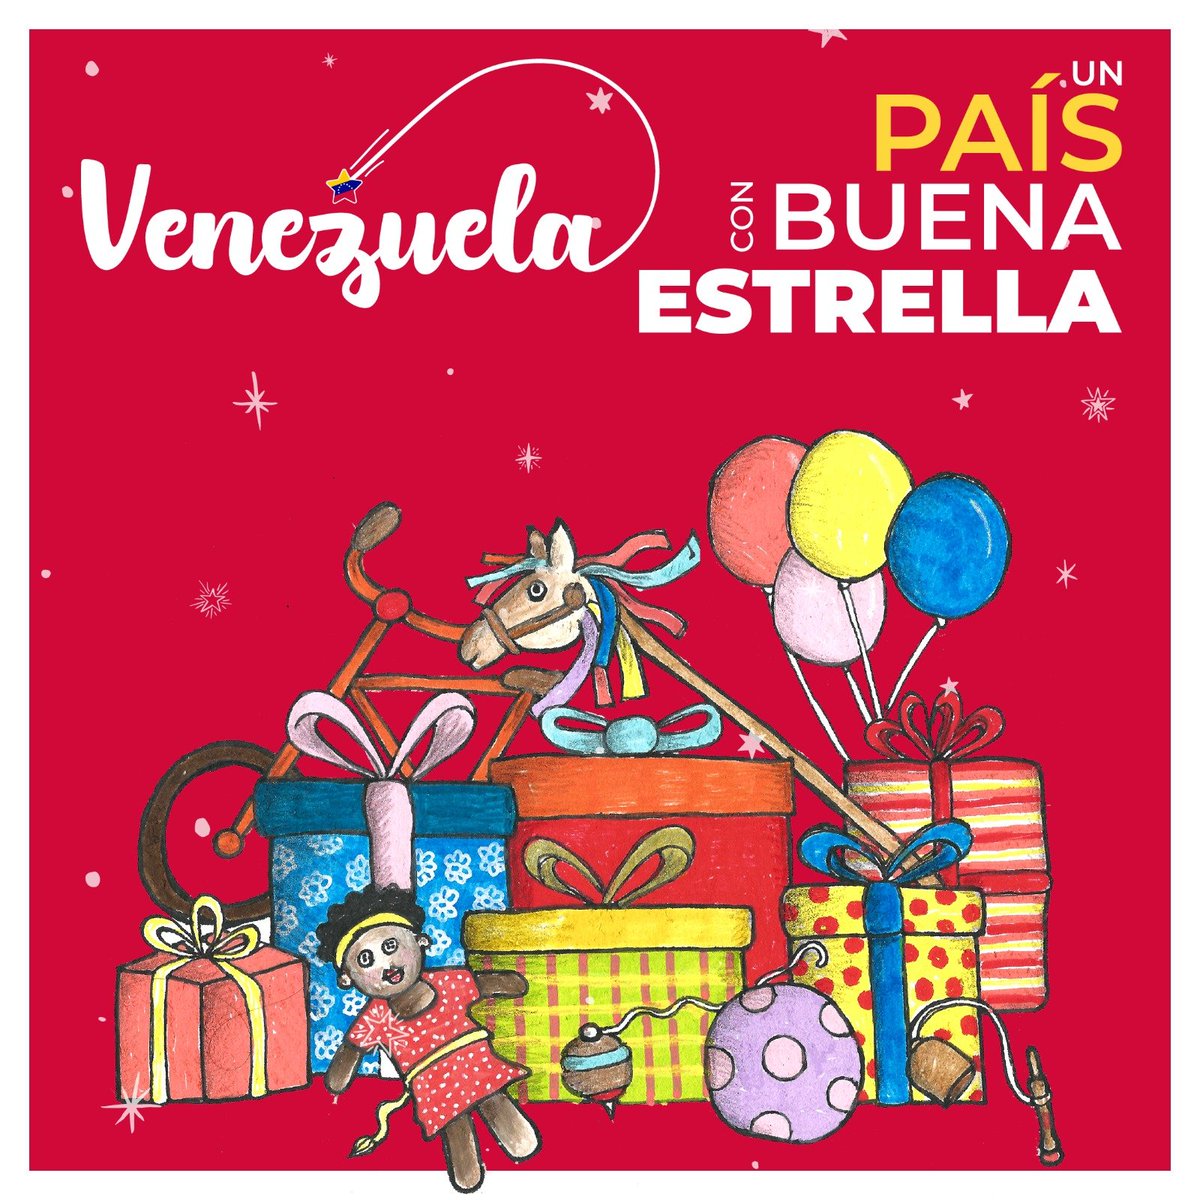 En esta temporada Navideña unamos nuestras voces en un canto lleno de esperanza, amor y paz para Venezuela. ¡Felices Fiestas! #PuebloEstableYEnPaz